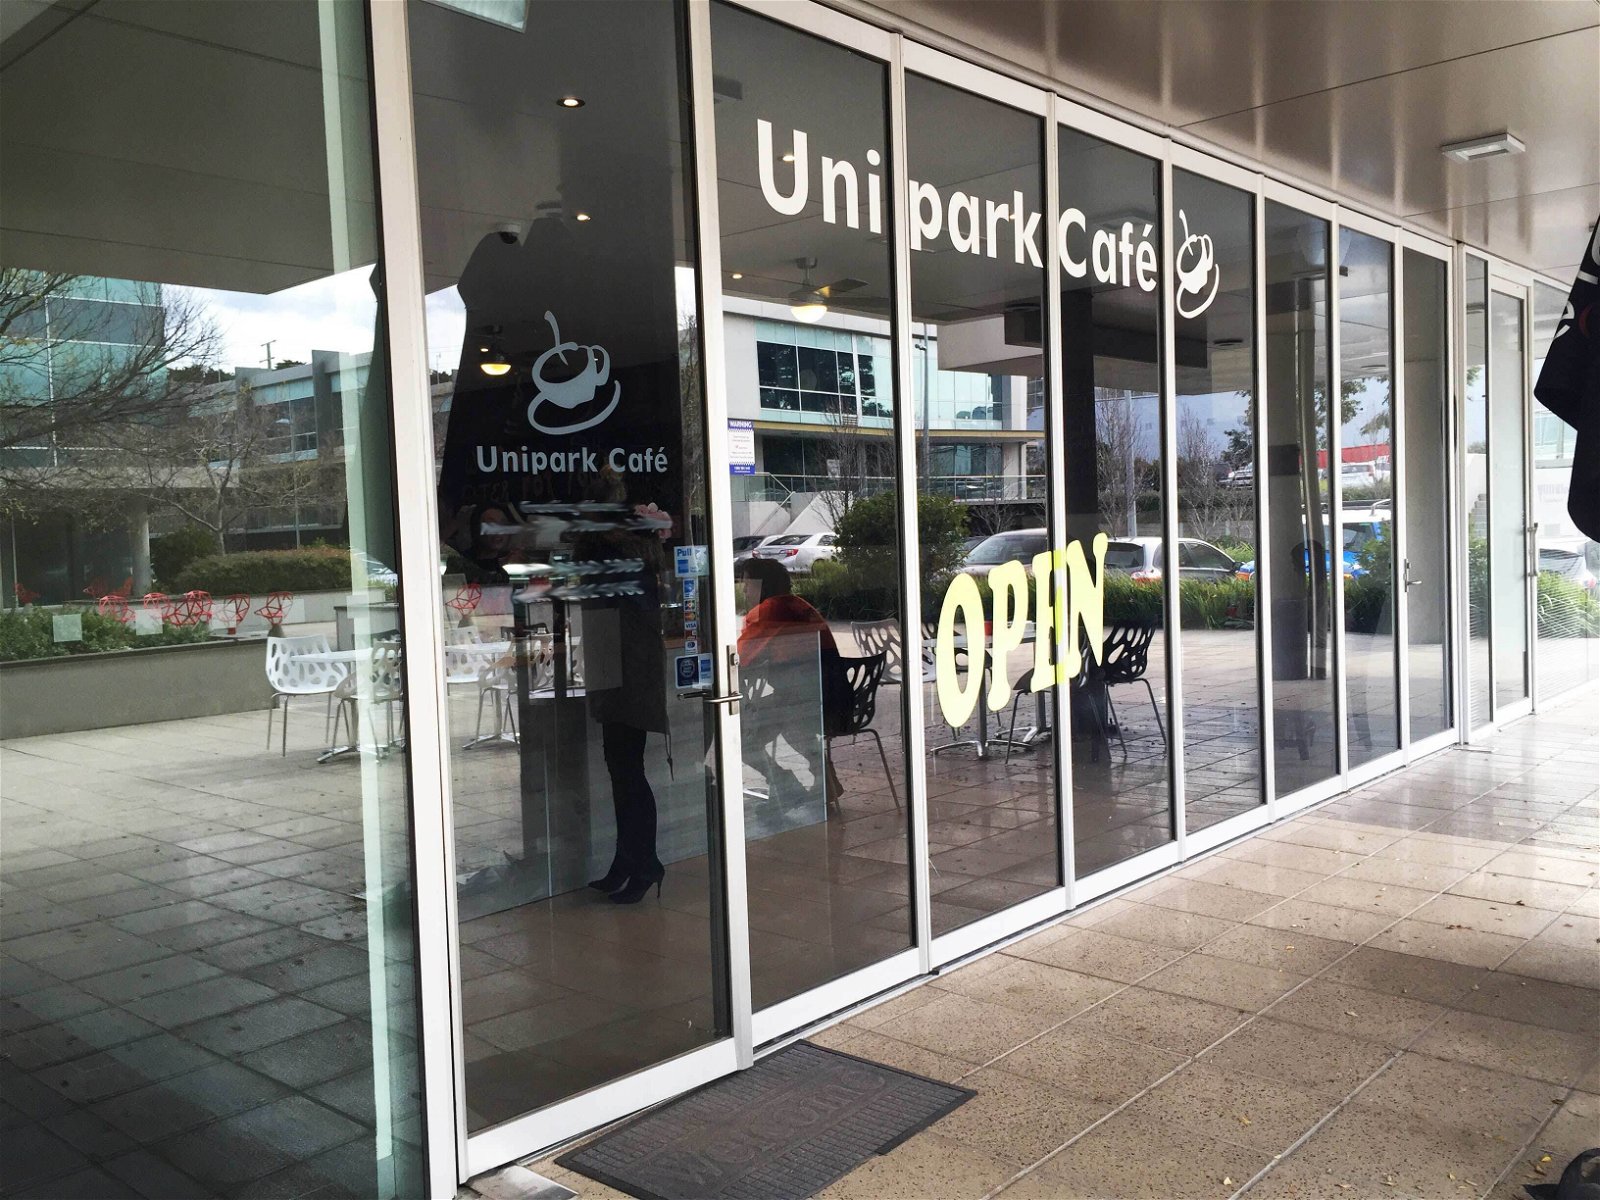 Unipark Cafe - Pubs Sydney